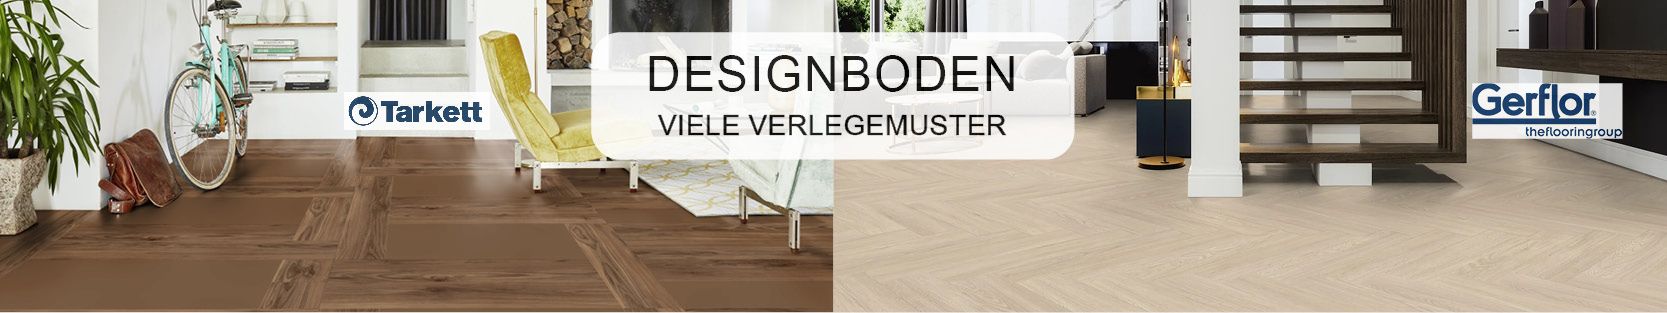 Header_Designboden_Wohntrends-Shop